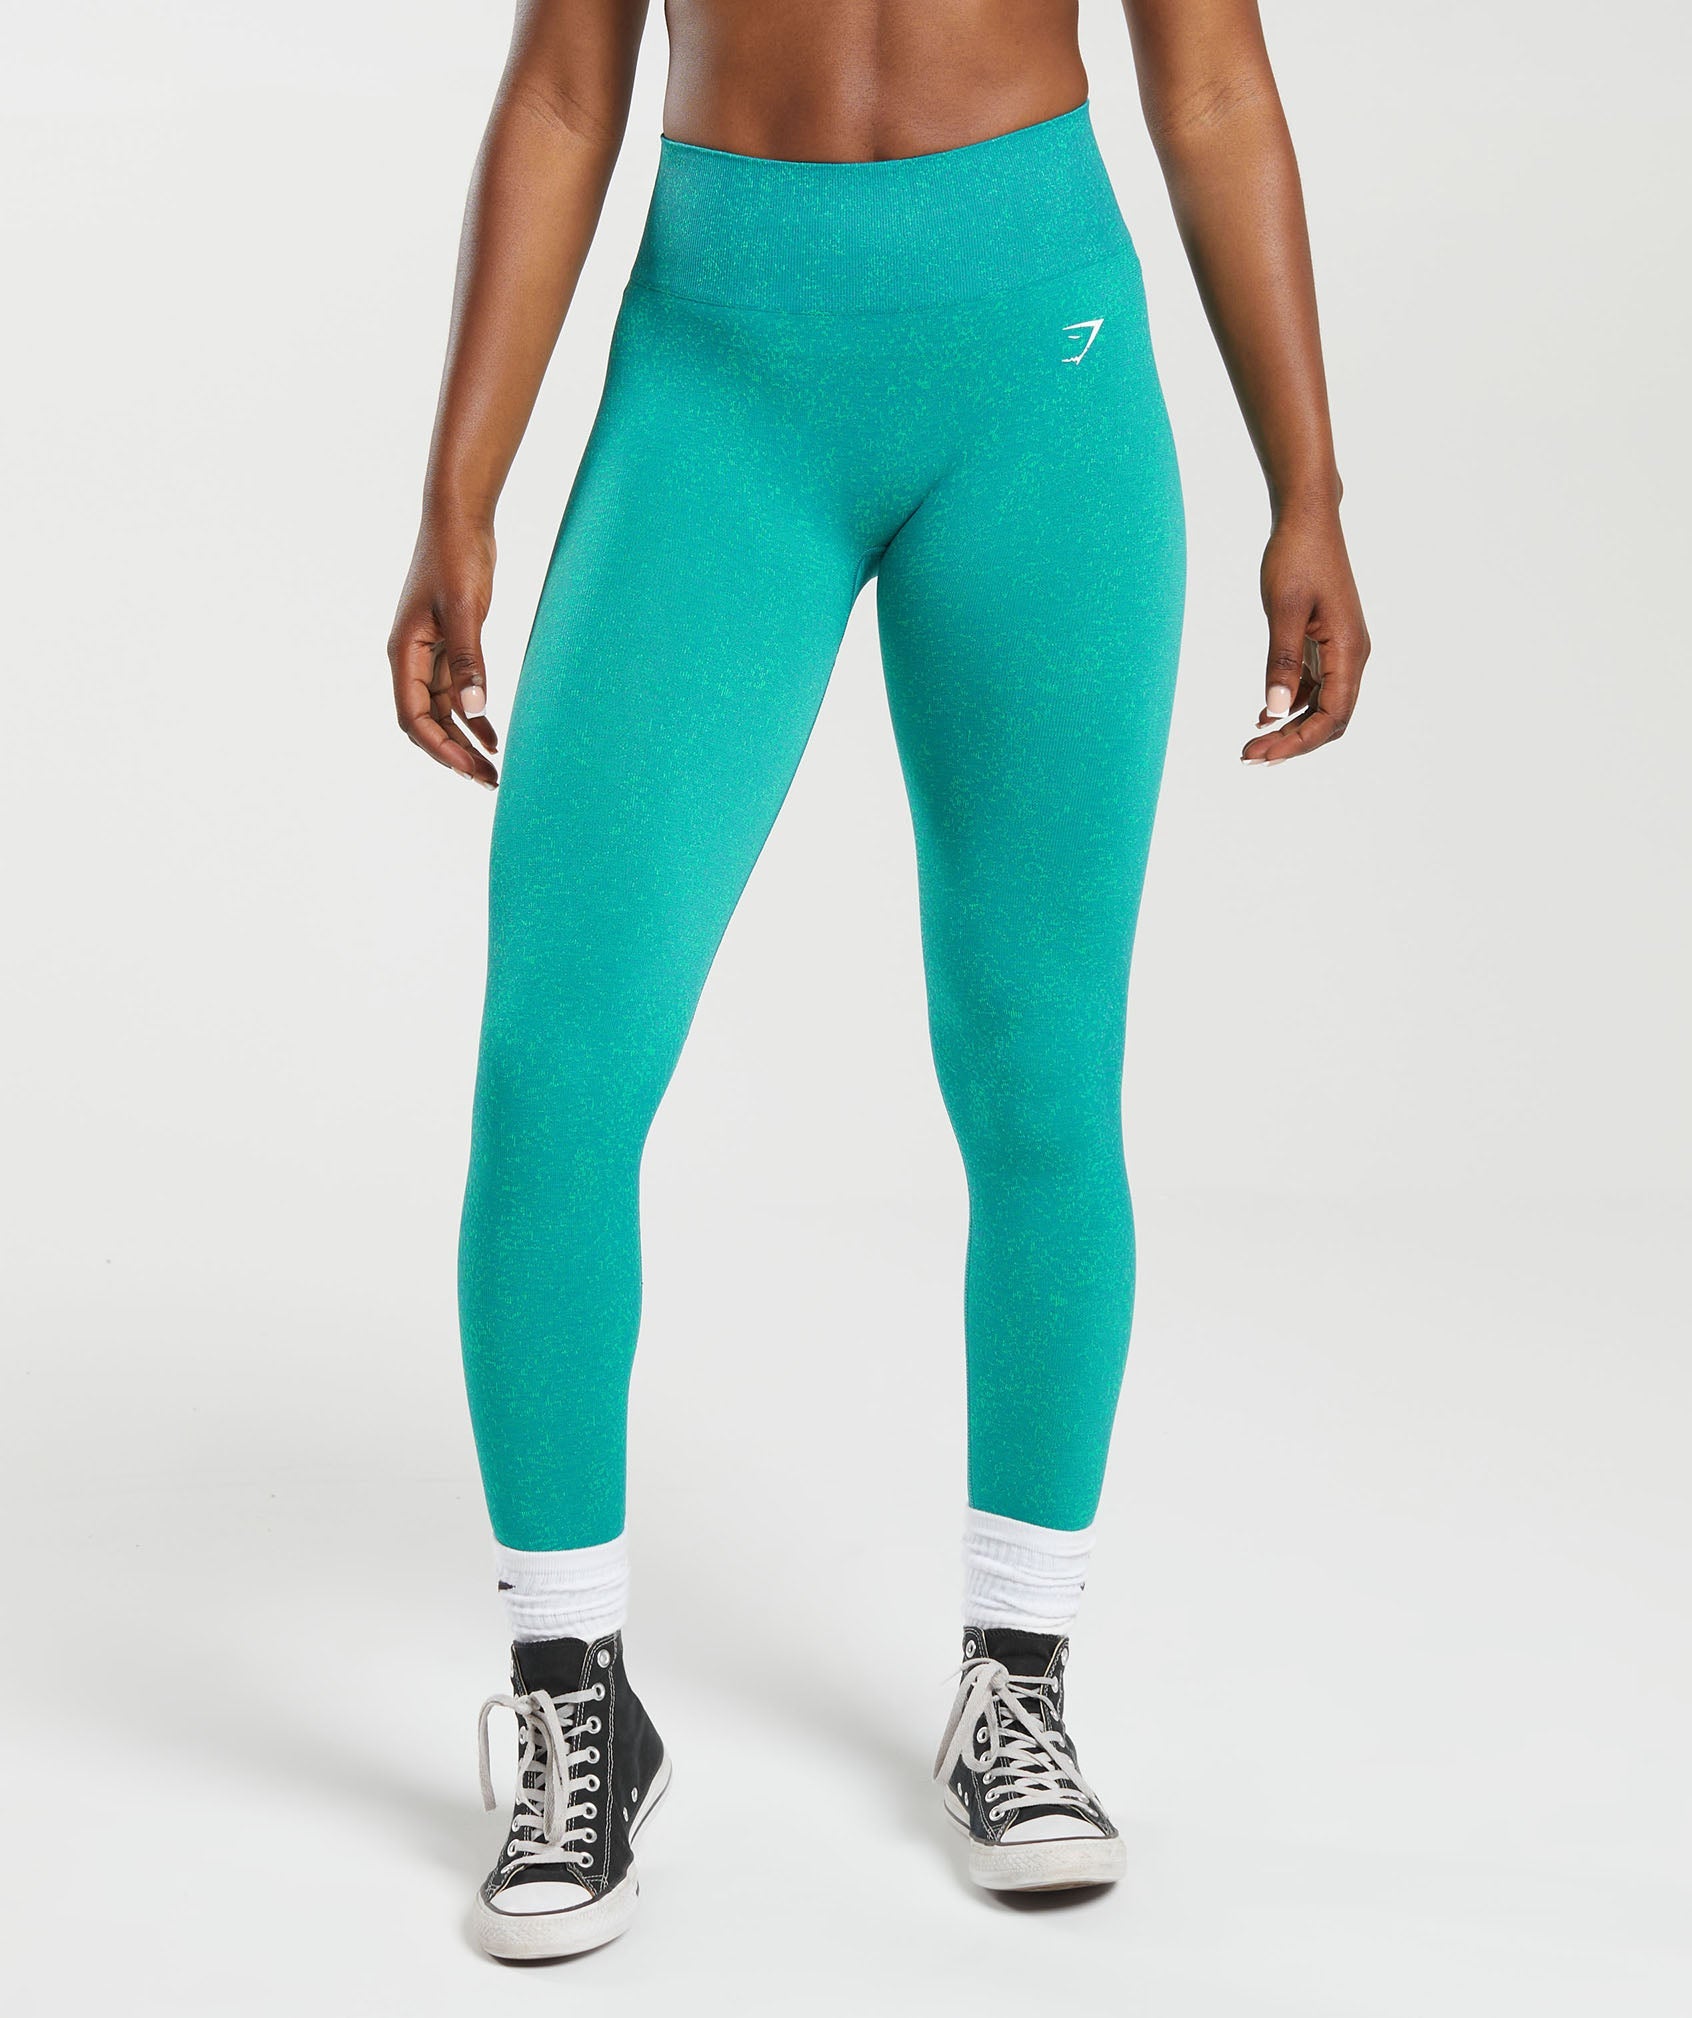 ADAPT FLECK SEAMLESS LEGGINGS Jewel Green Gymshark Womens Body Fit Size: XS,  S, M #gymshark #gymsharkwomen #trainingleggings #gymlegging